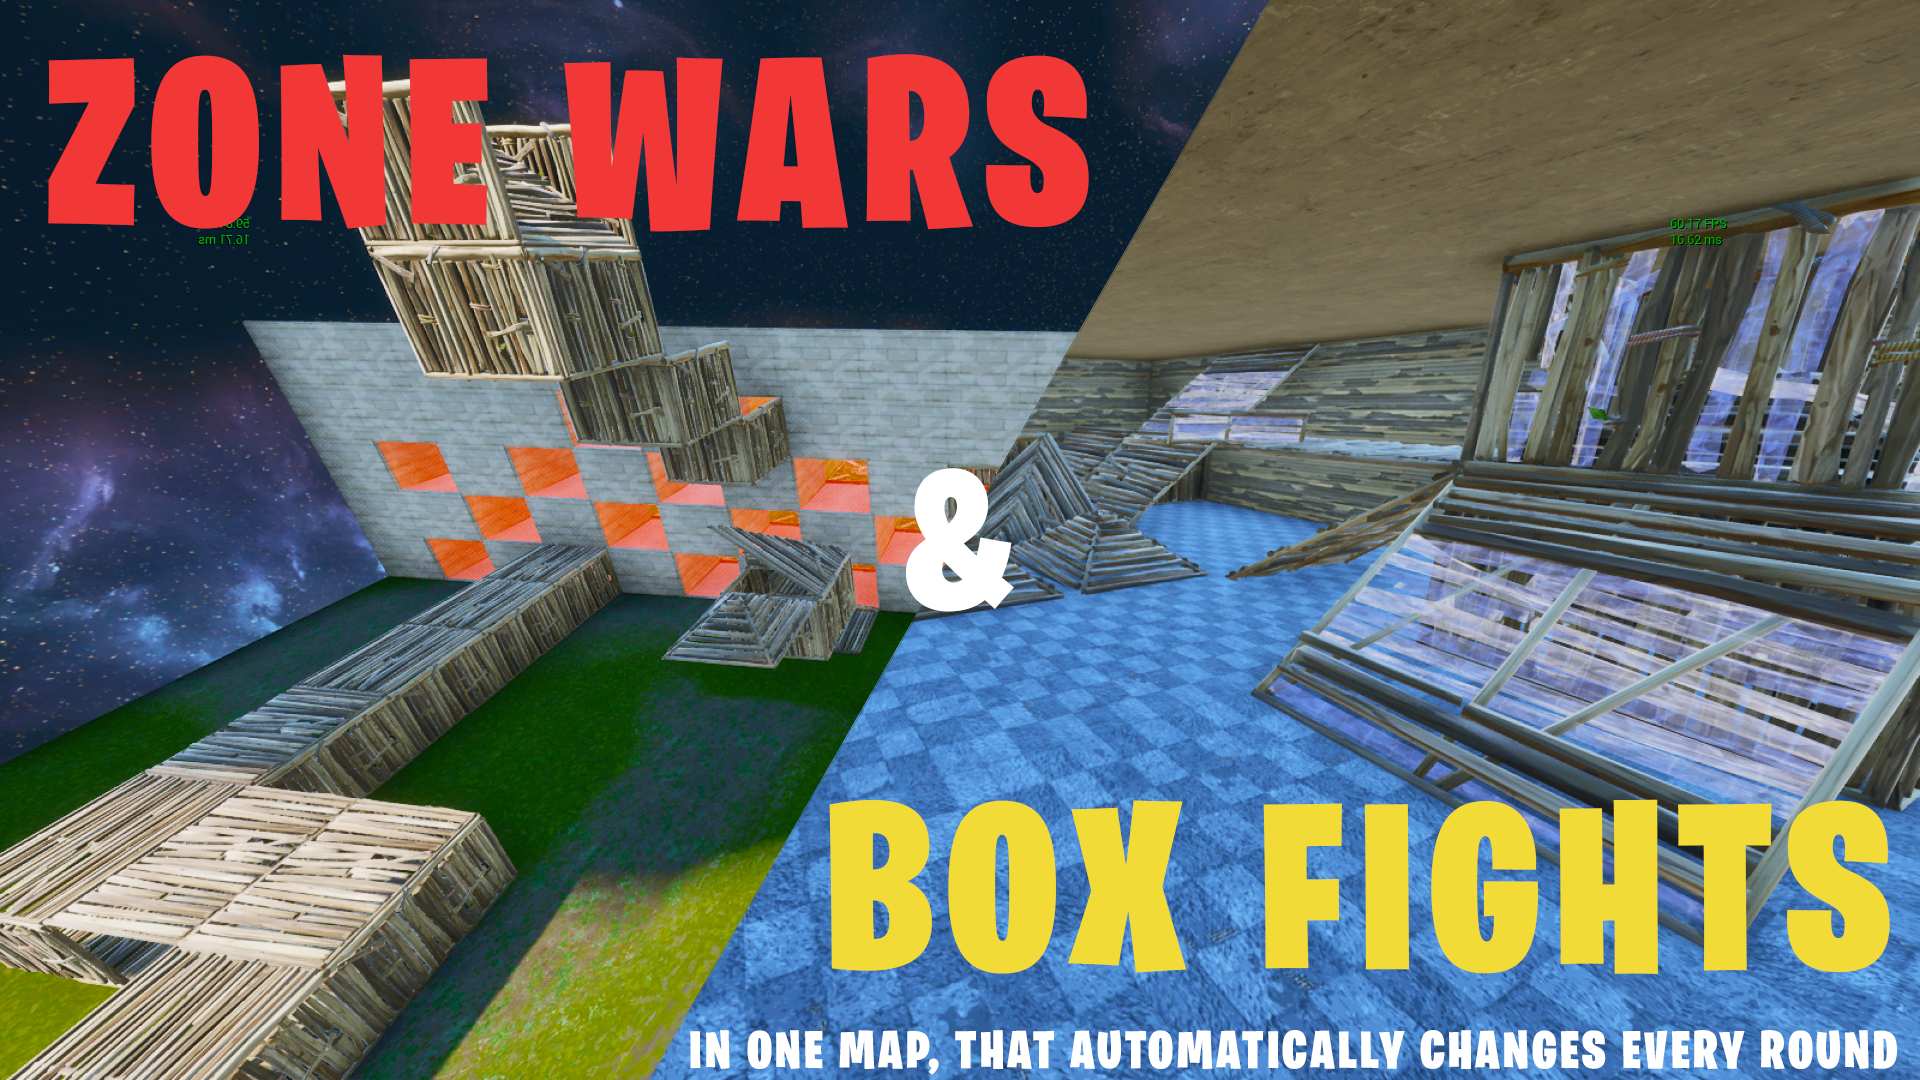 BOX FIGHT & ZONE WAR - FFA - Fortnite Creative Map Codes - Dropnite.com...